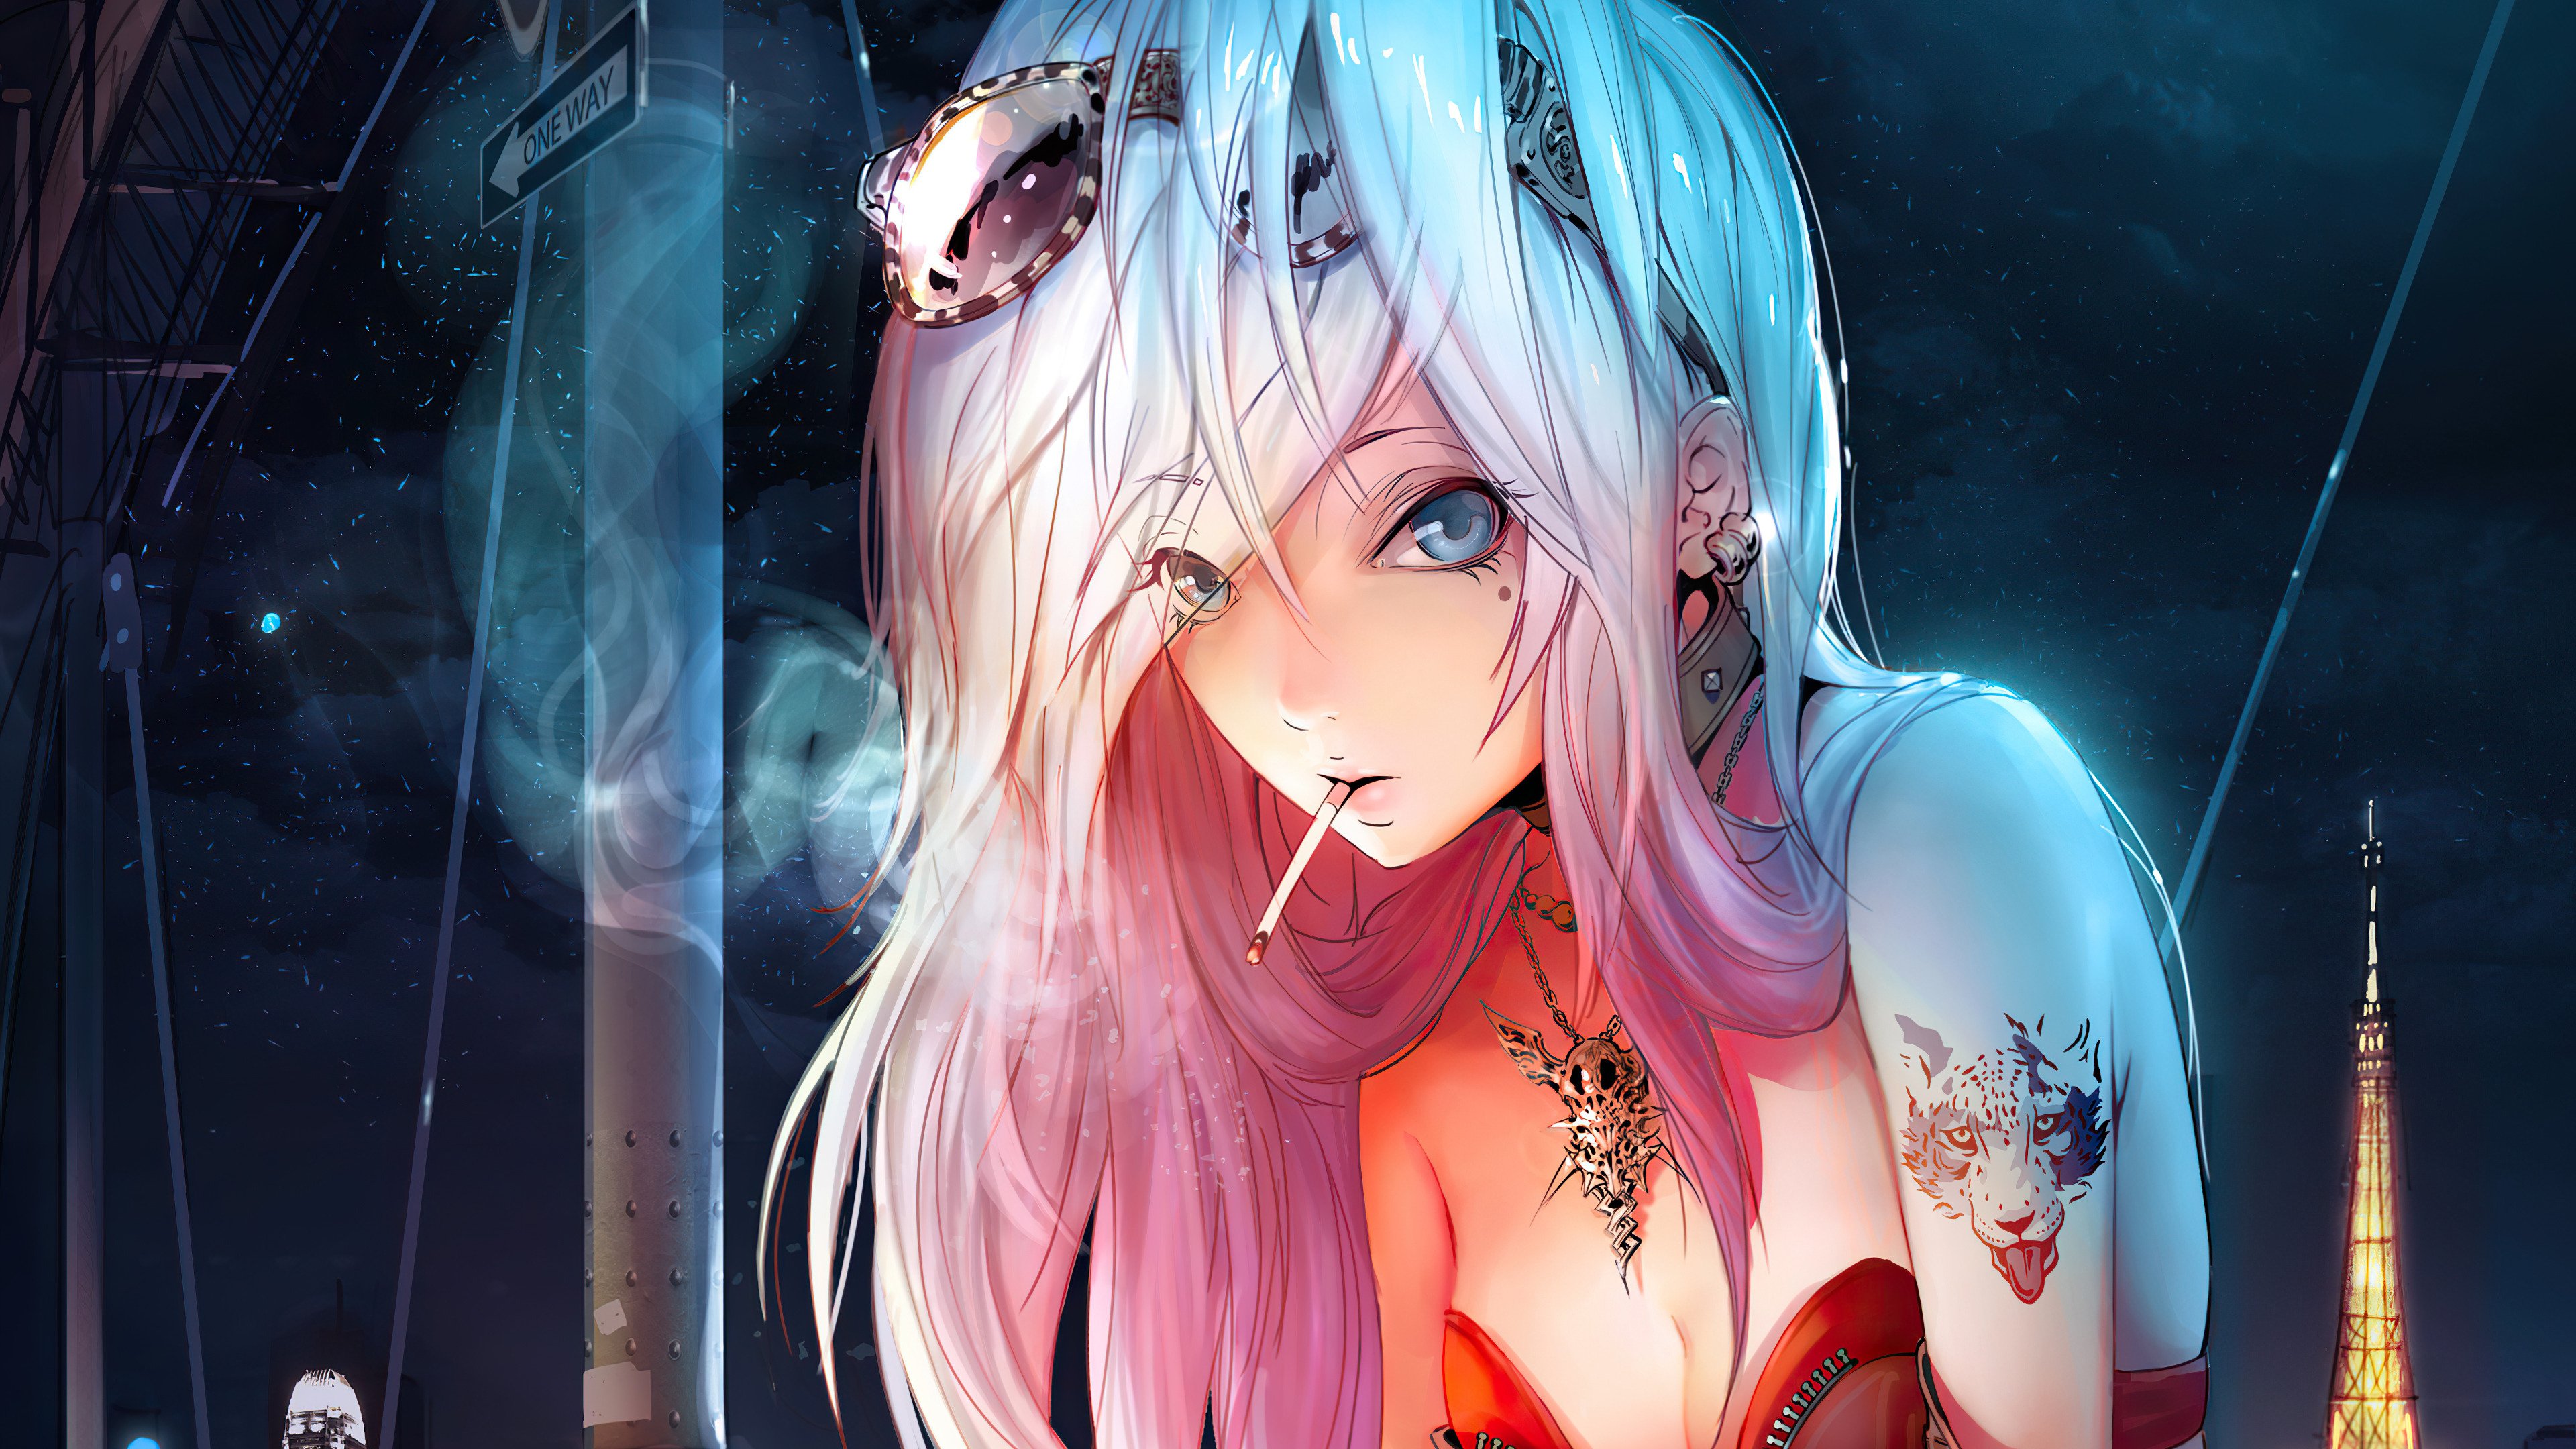 Wallpaper Anime Girl smoking